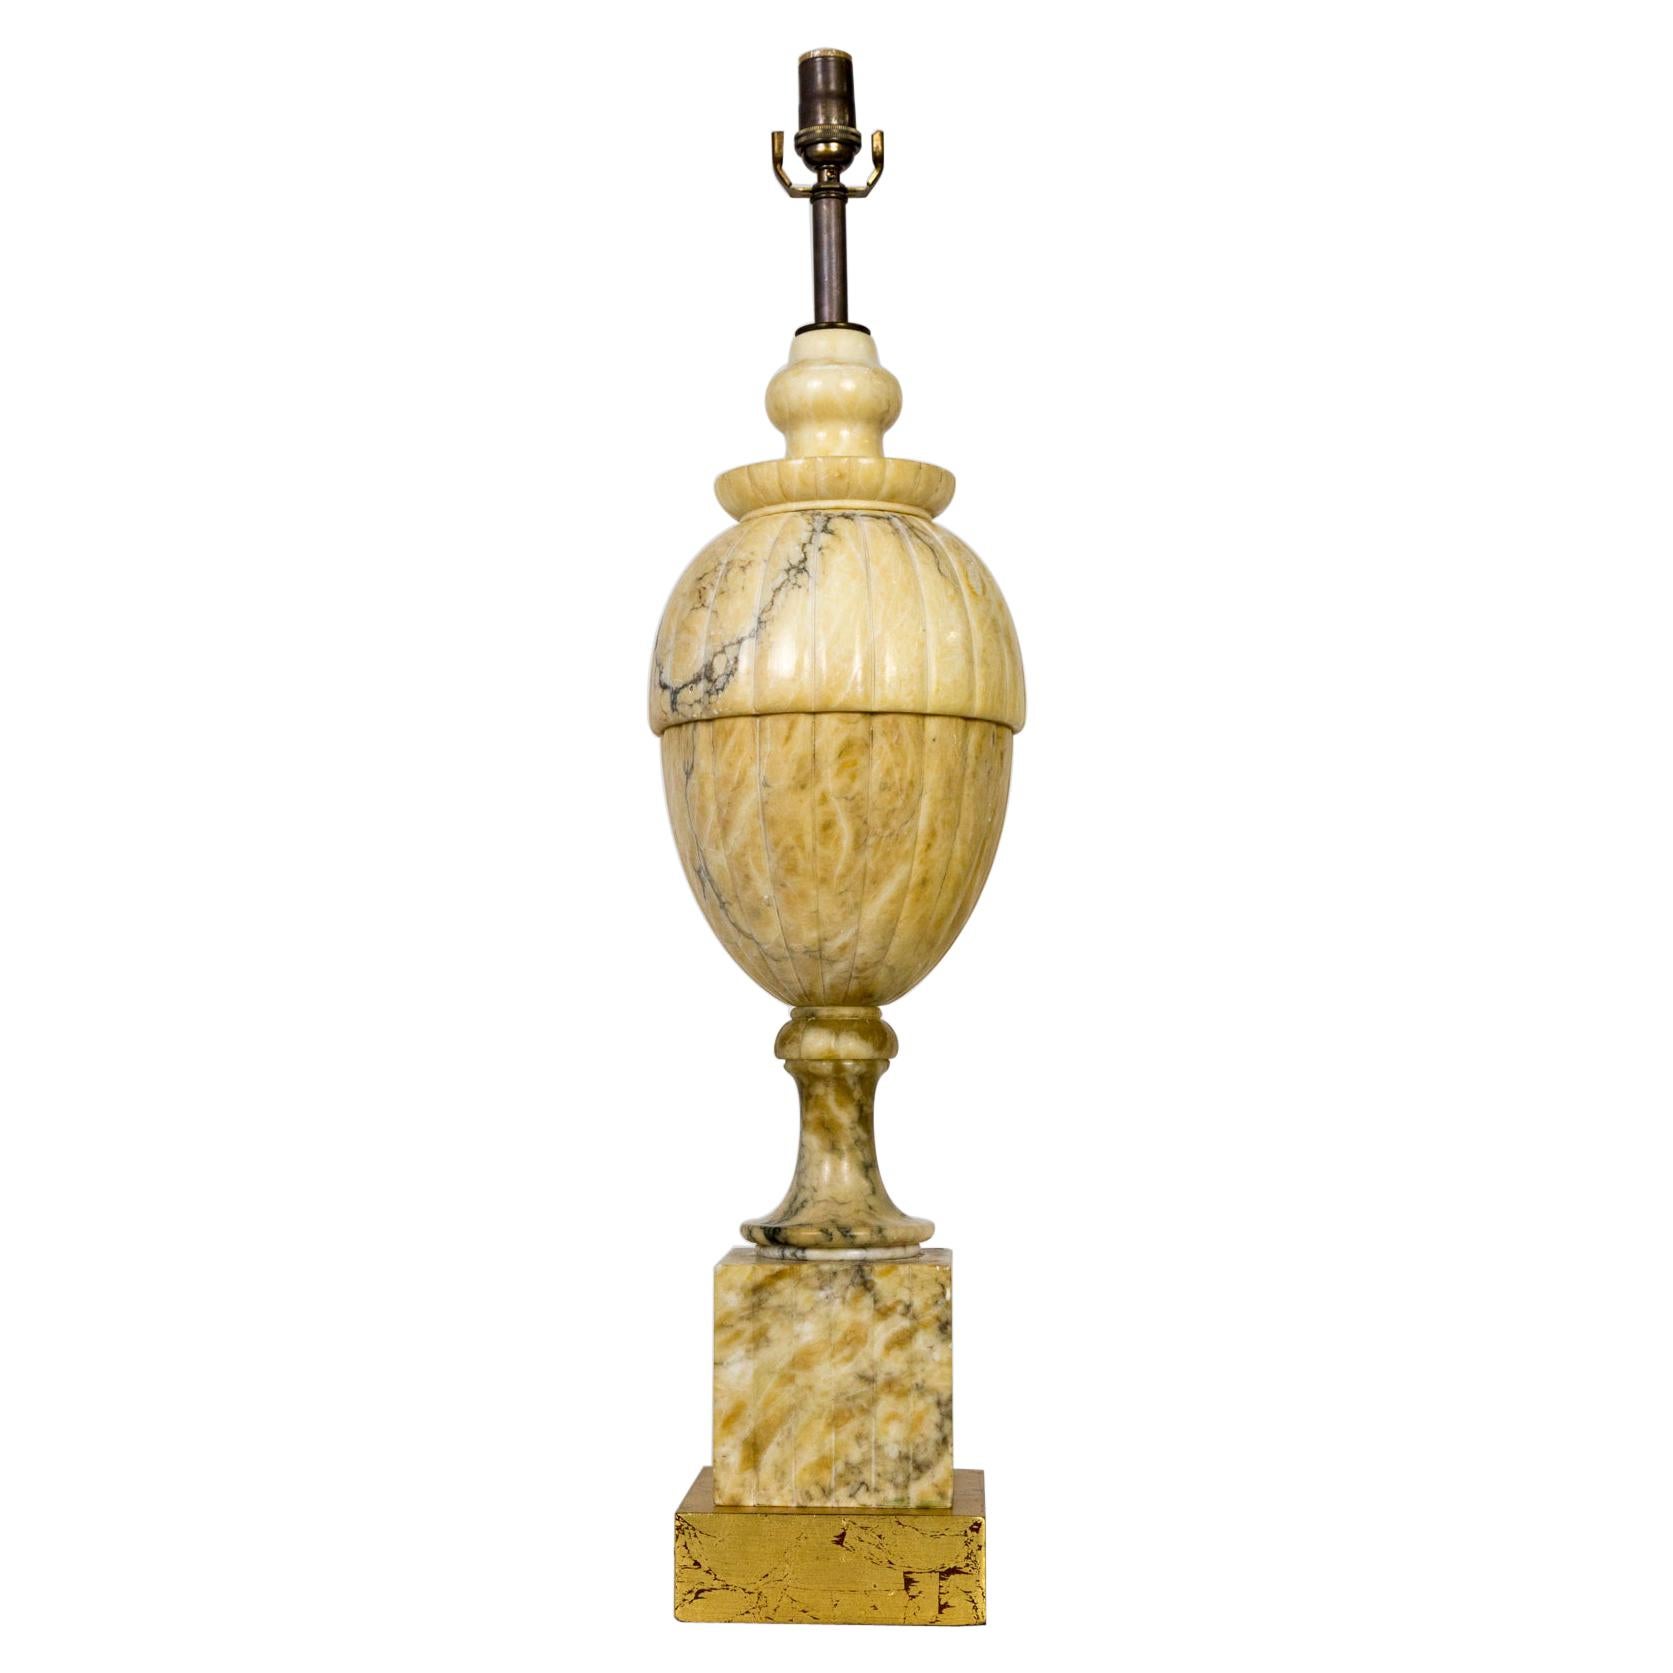 Lampe classique en marbre jaune en forme d'urne couverte, de style classique